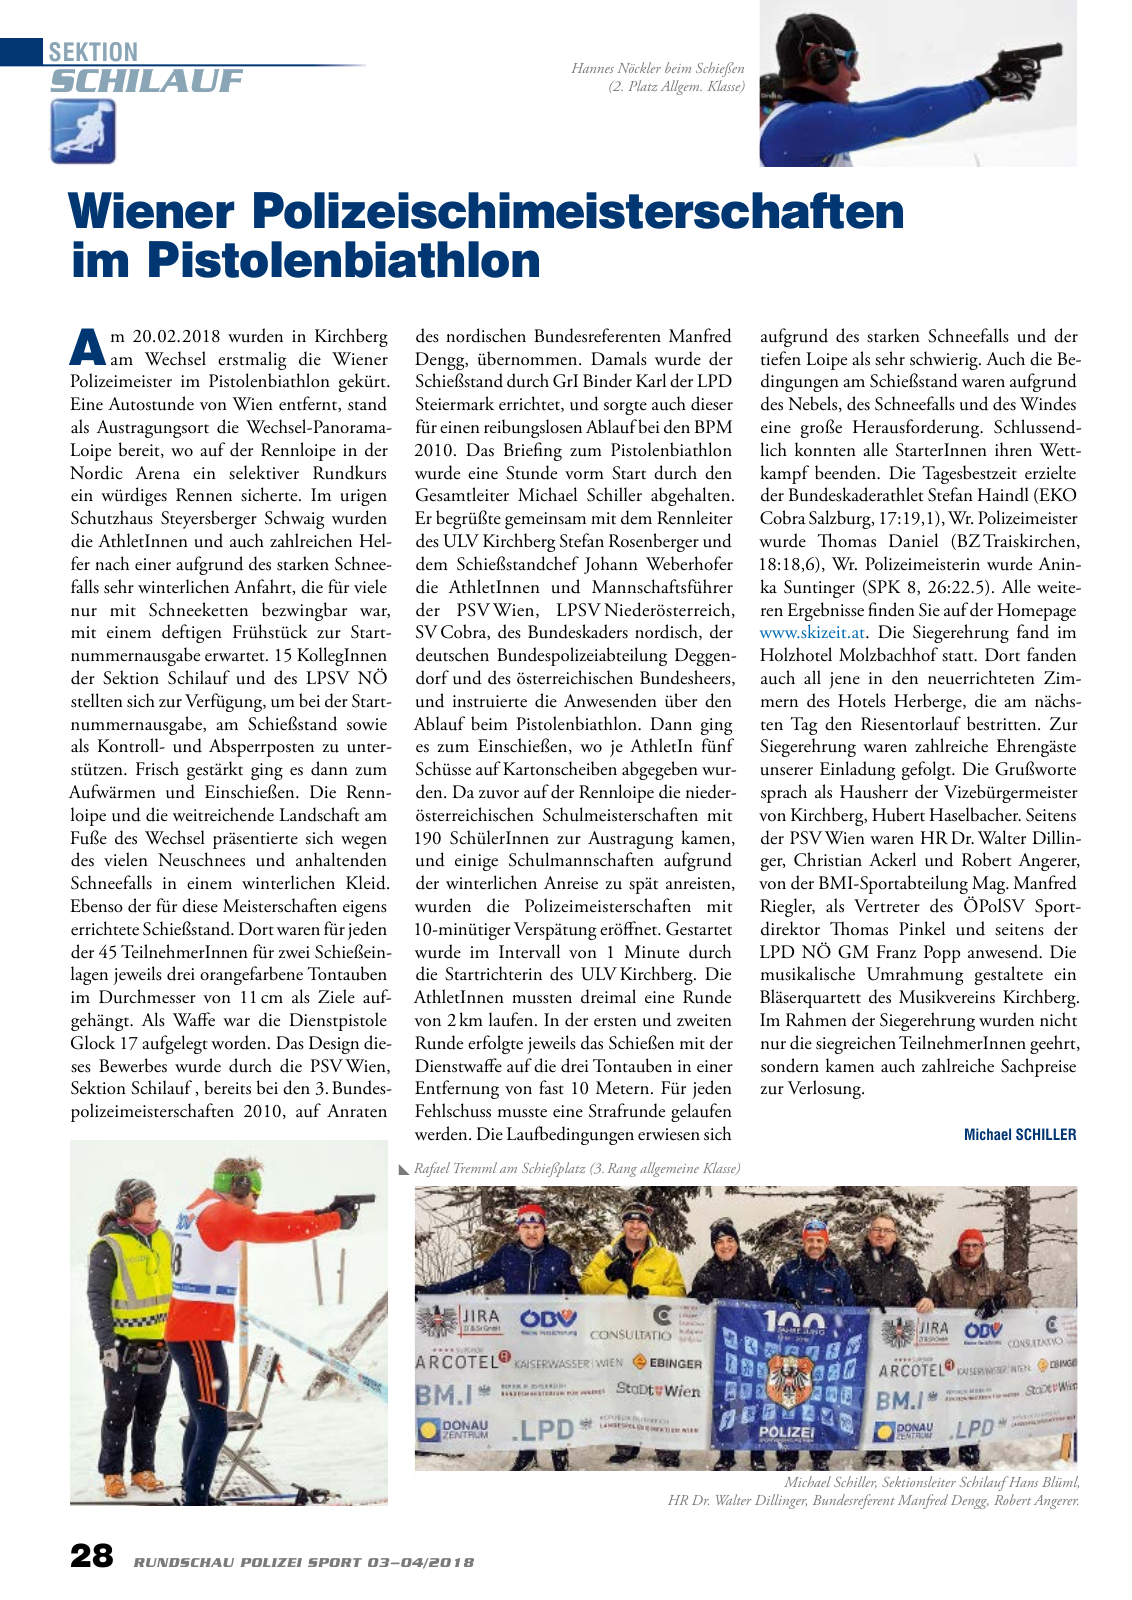 Vorschau Rundschau Polizei Sport 03-04/2018 Seite 28